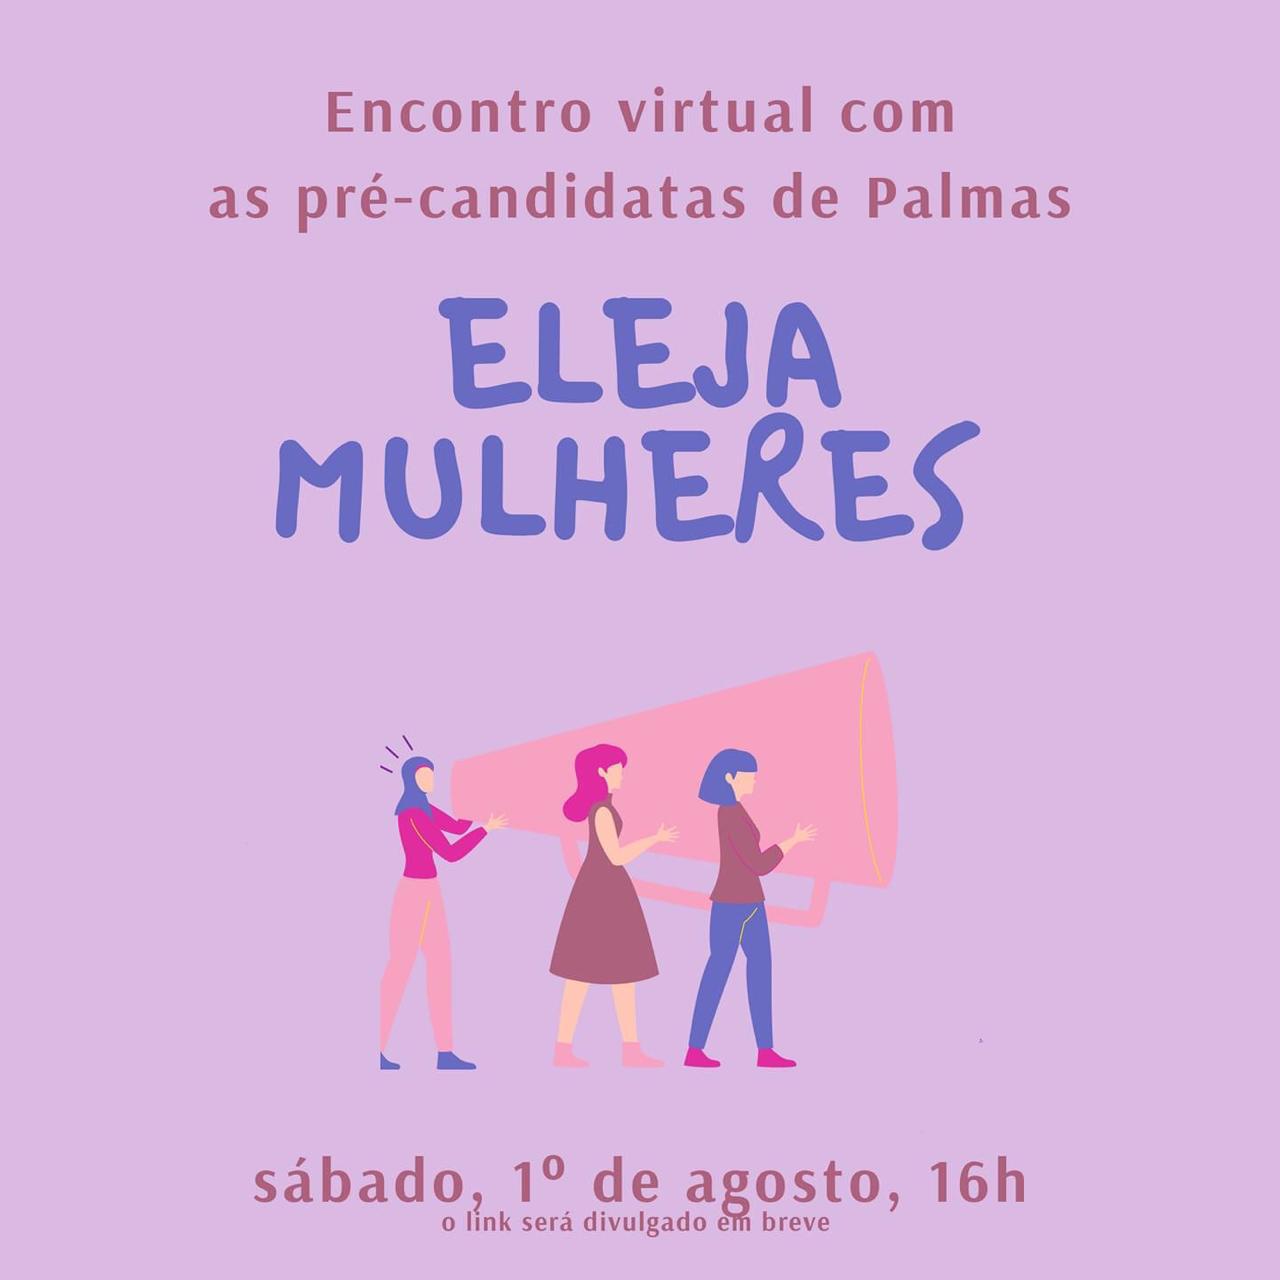 Encontro Virtual de pré-candidatas em Palmas ocorre nesse sábado, 1º de agosto